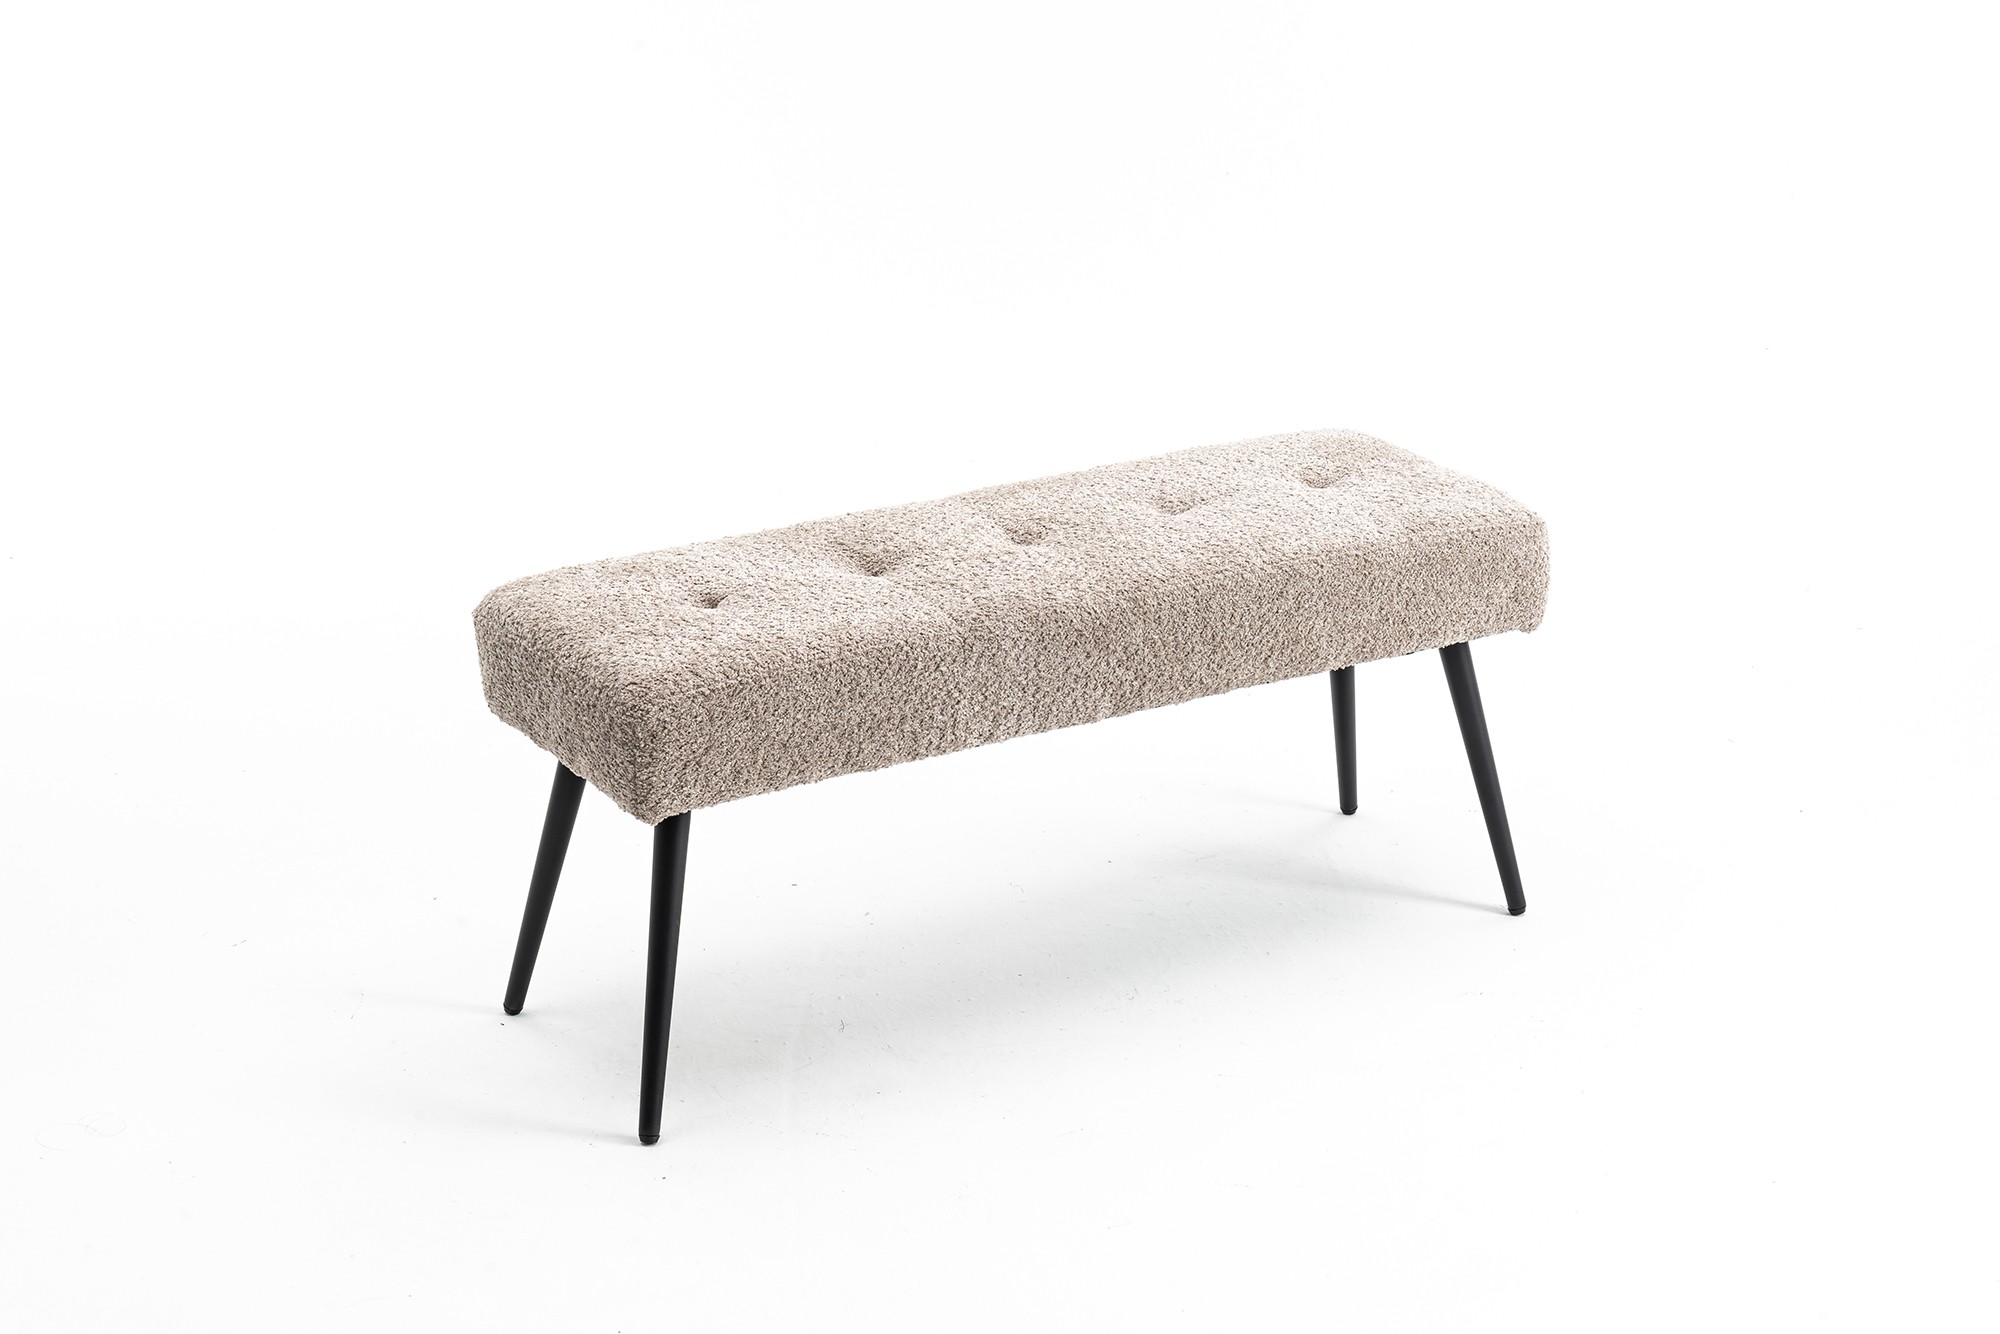 Estila Moderná dizajnová lavica Soreli s buklé čalúnením v sivo béžovom odtieni greige 100 cm